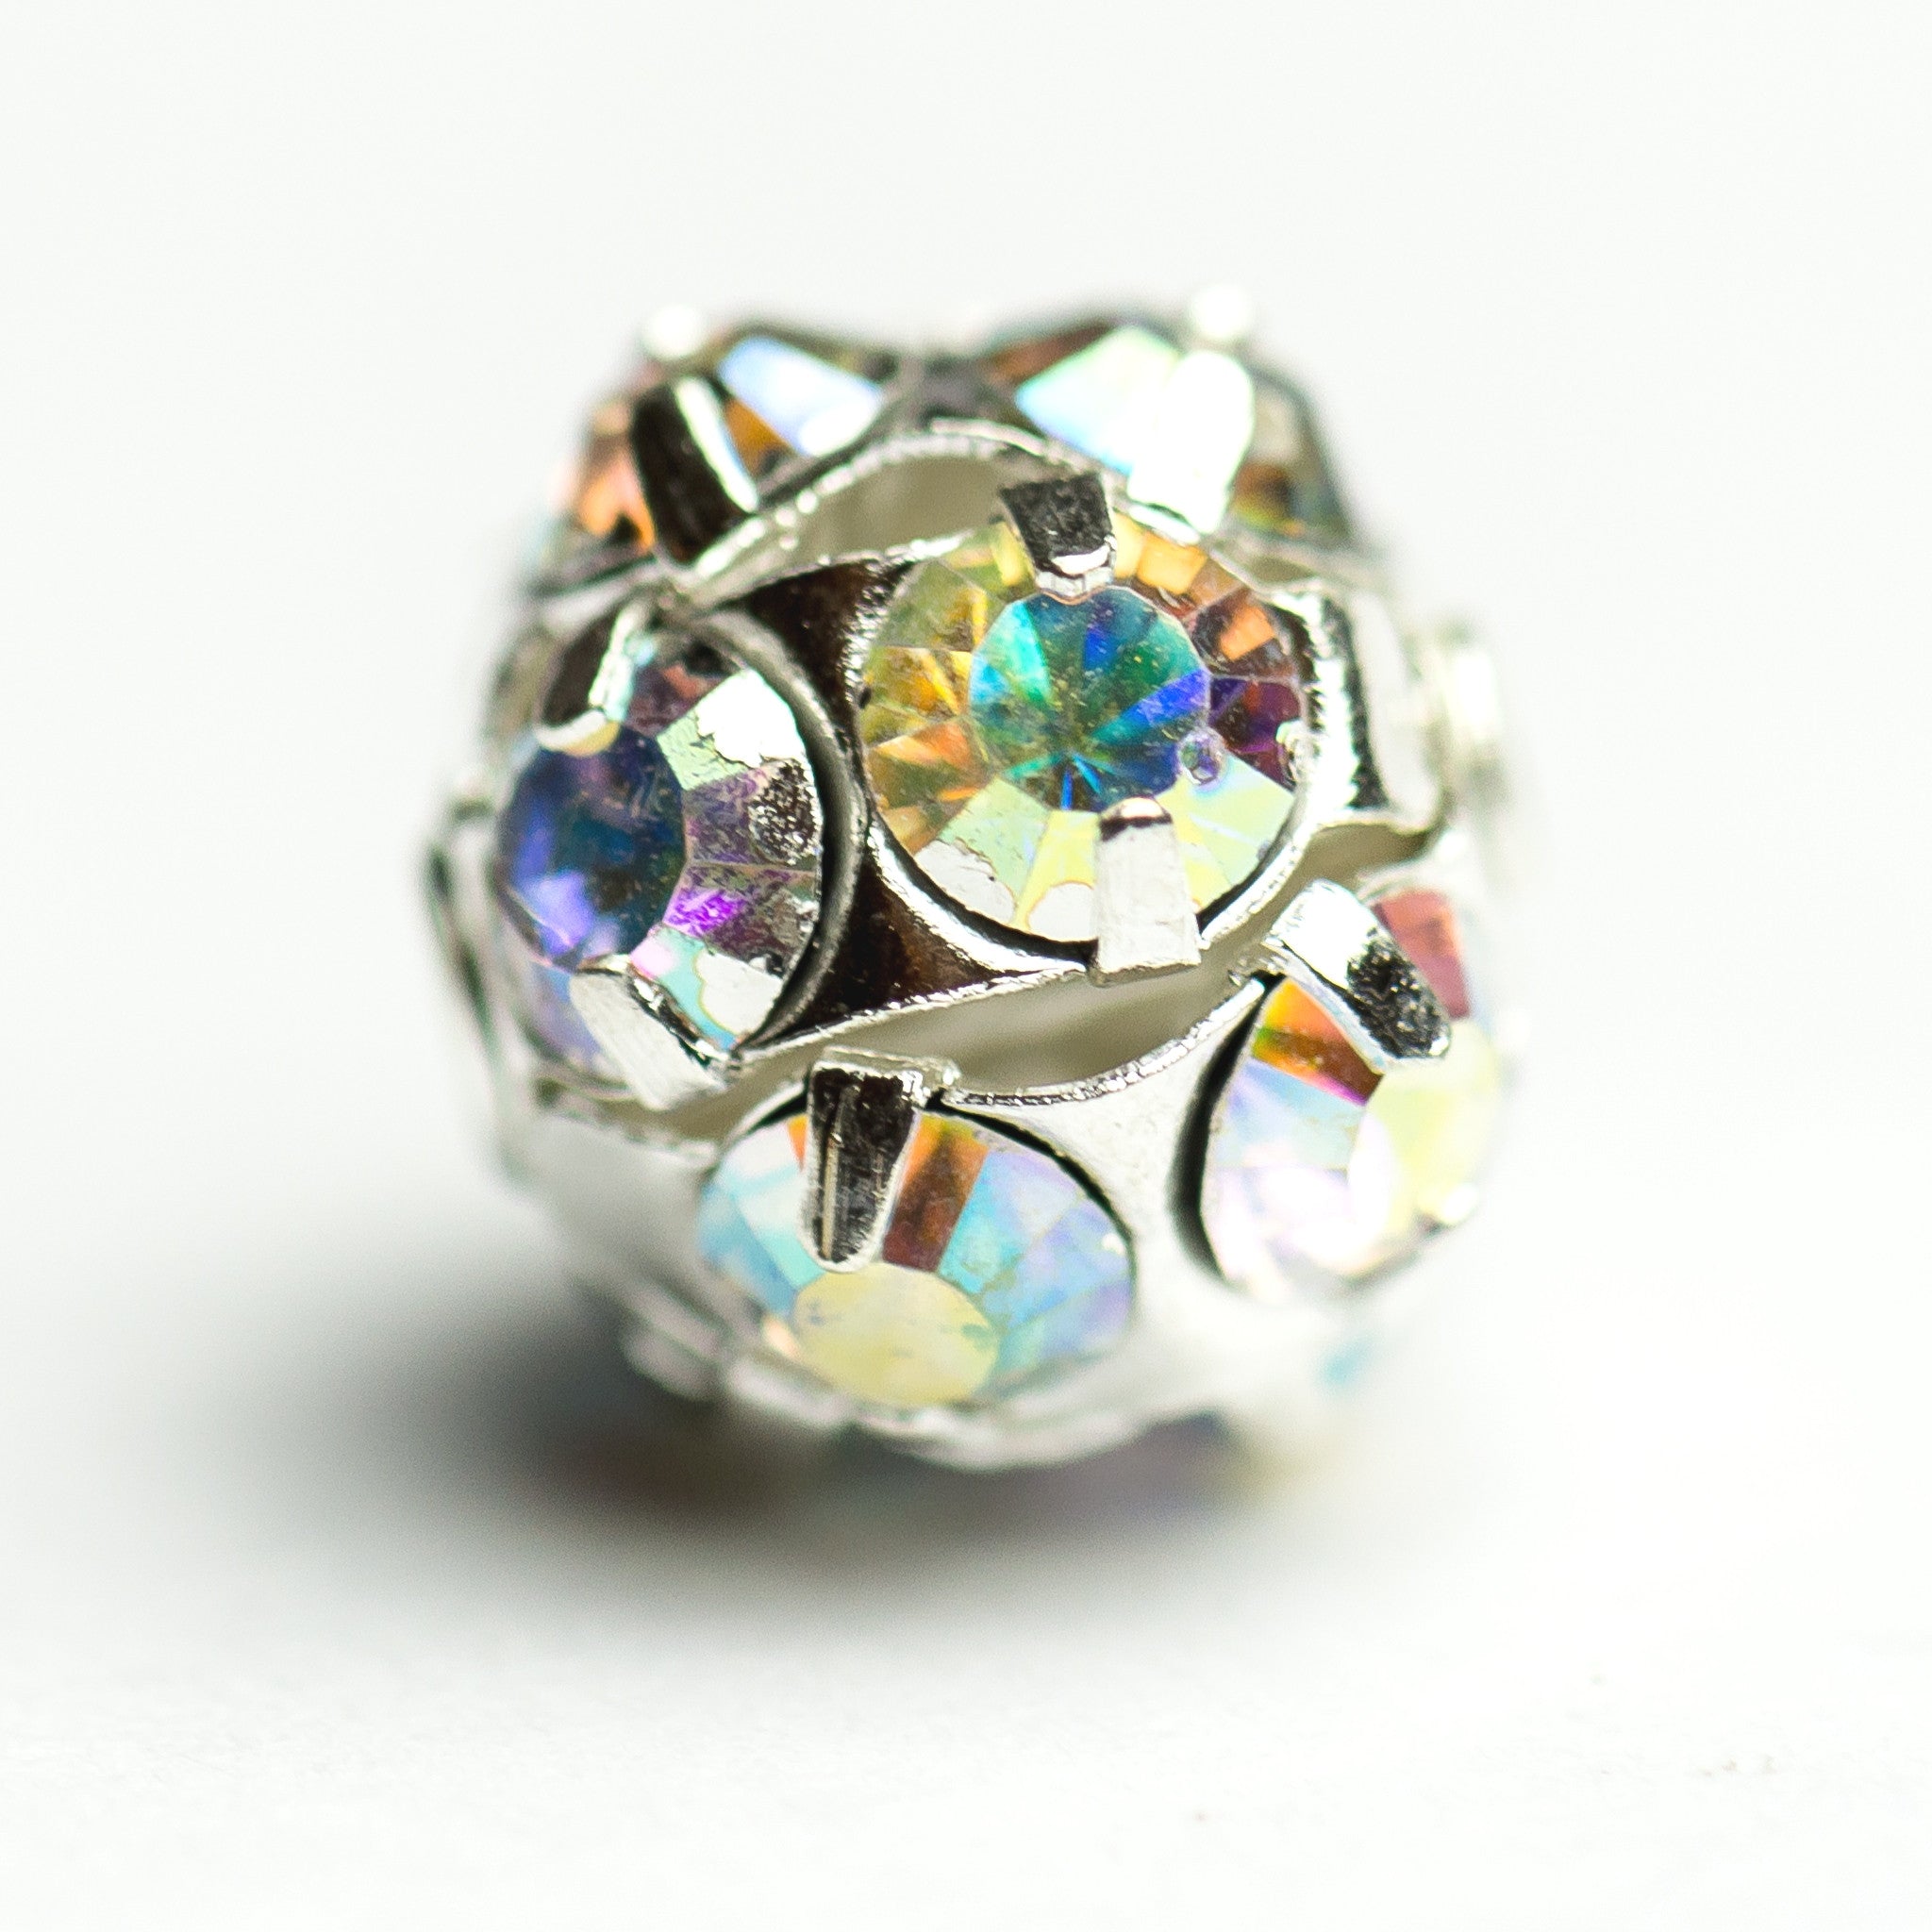 5MM Rhinestone Ball Crystal Ab/Silver (12 pieces)